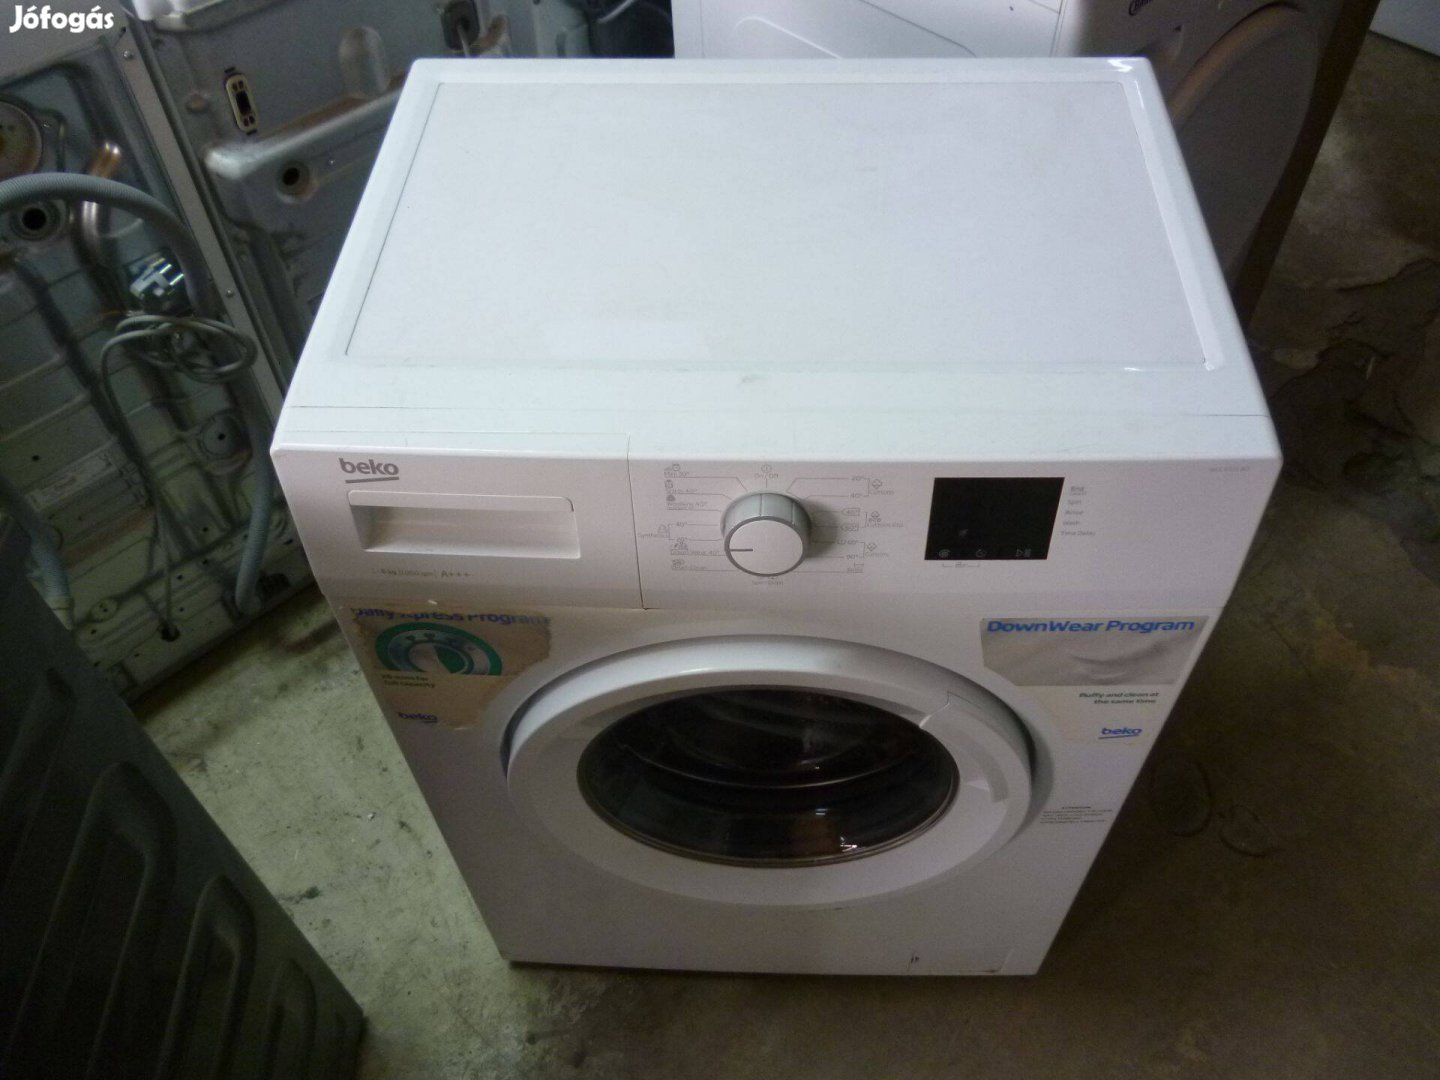 Használt Beko automata mosógép